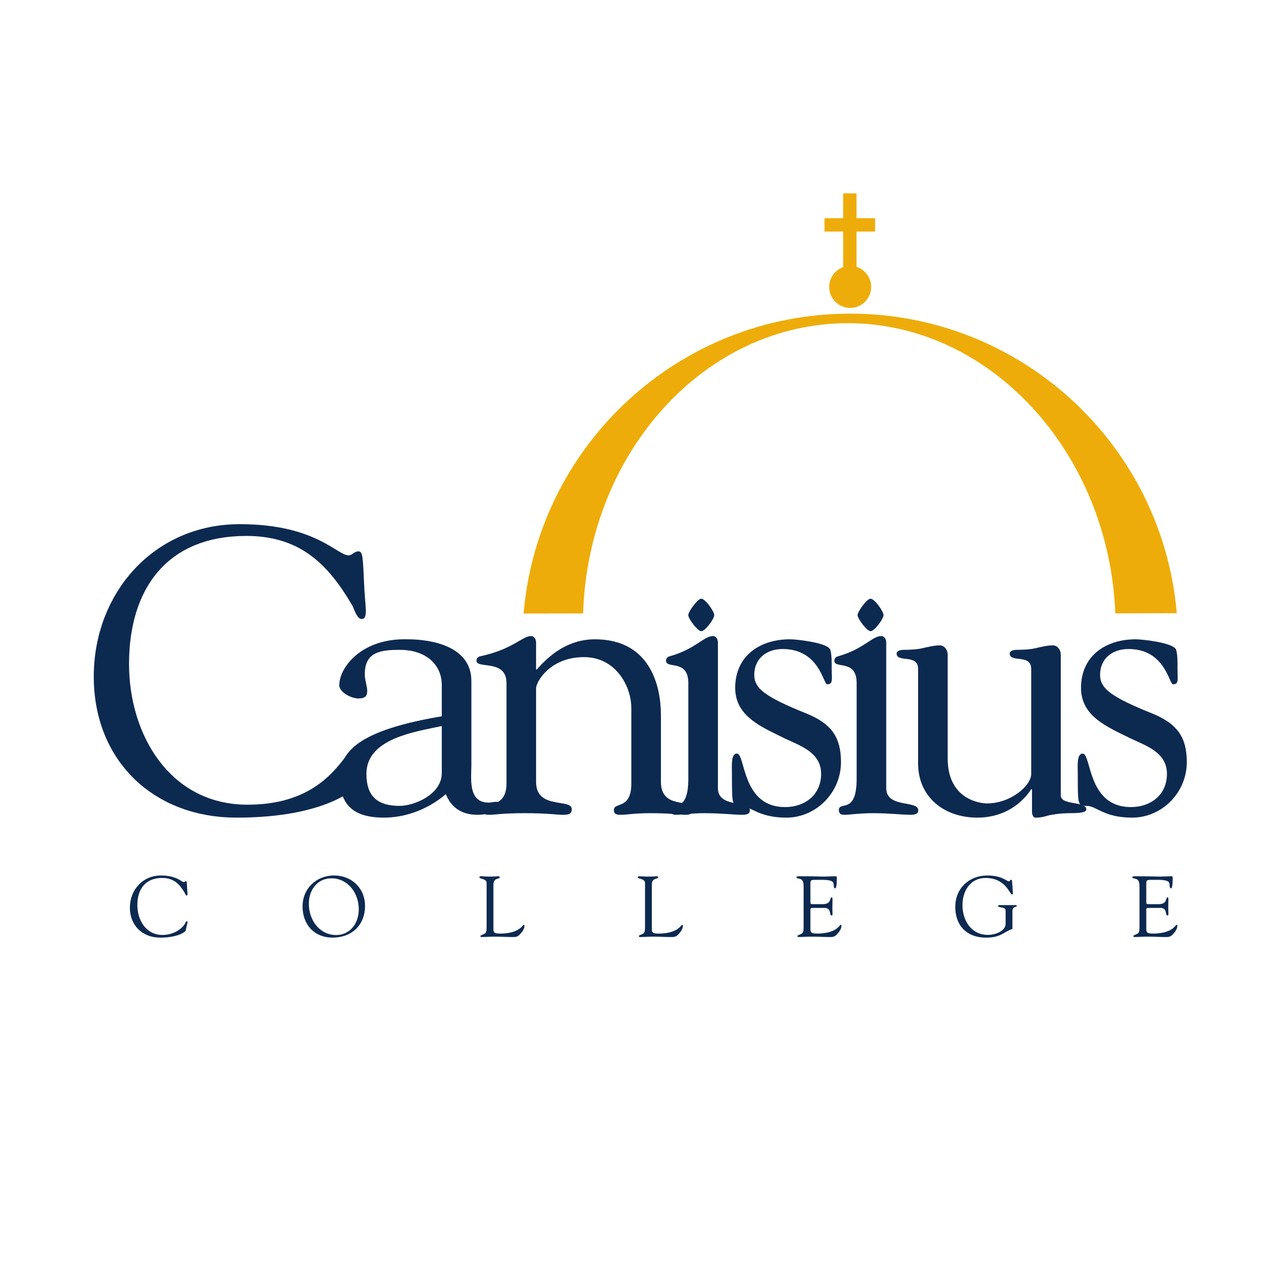 Canisius Logo - Canisius College - iWorld Shopping Center